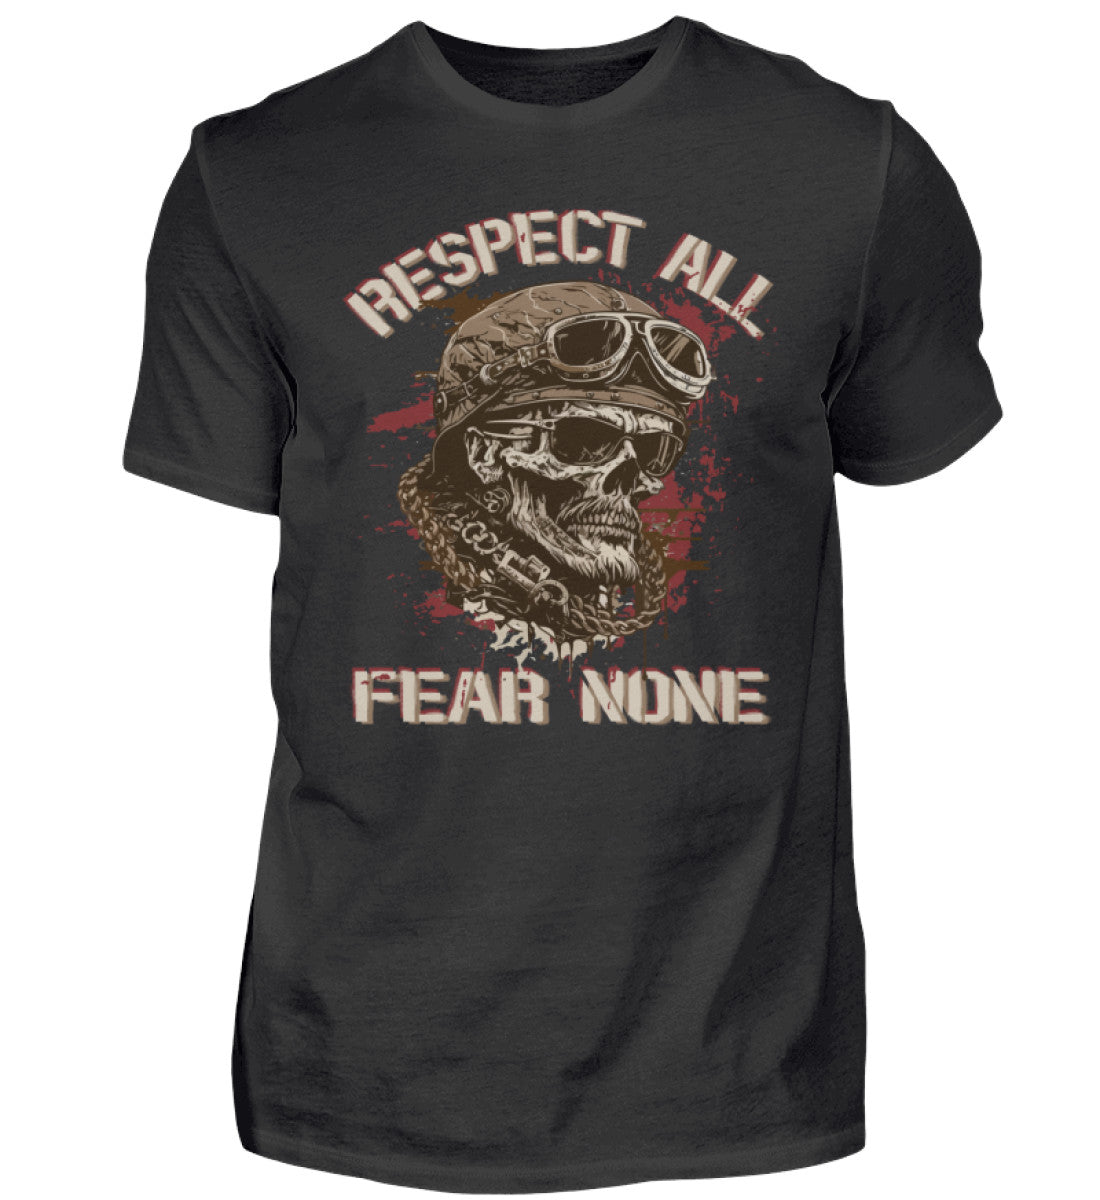 Ein Biker T-Shirt für Motorradfahrer von Wingbikers mit dem Aufdruck, Respect All - Fear None, in schwarz.